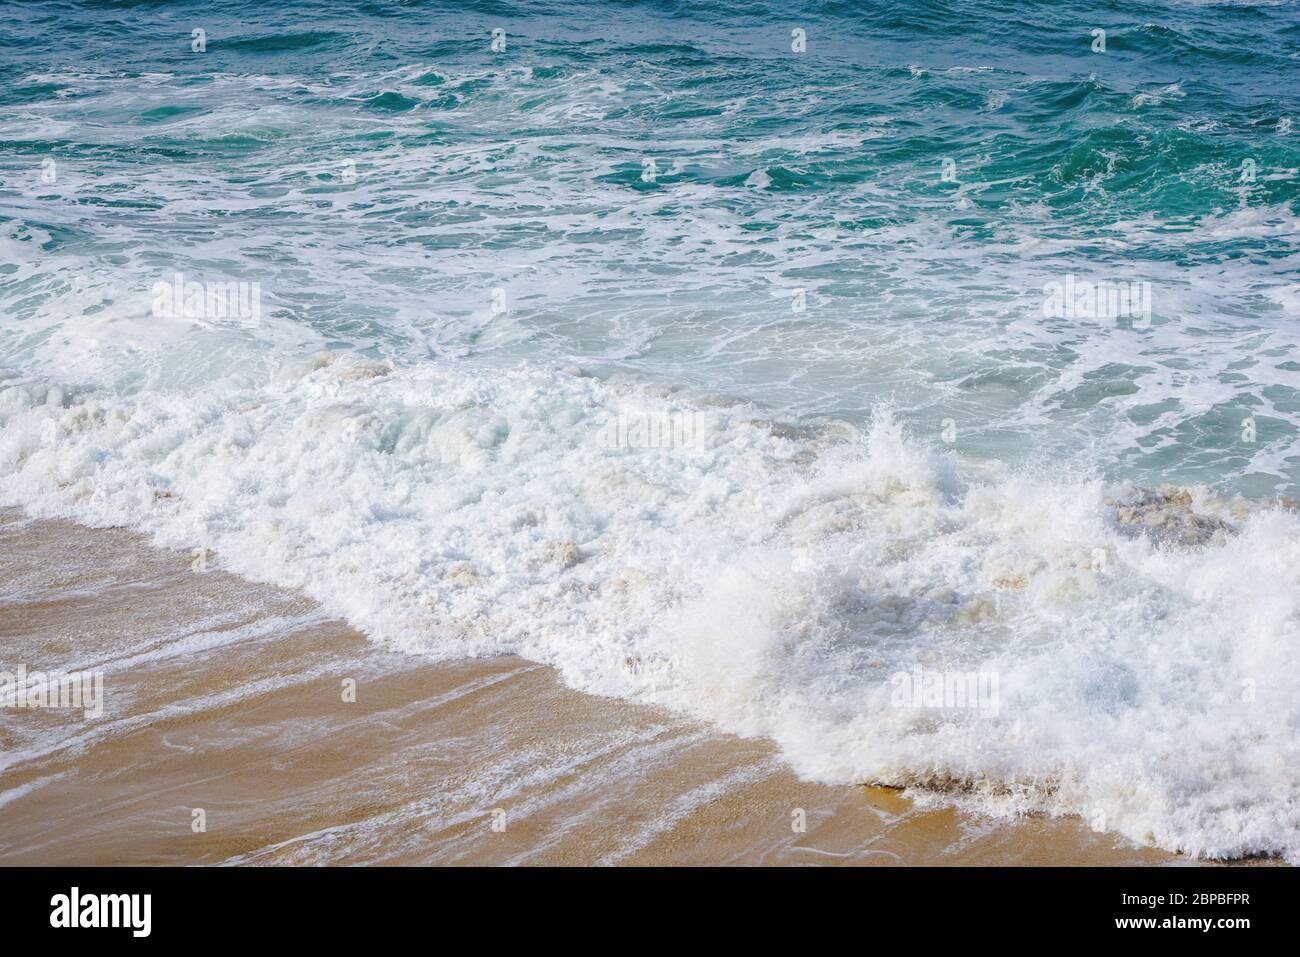 Eau turquoise de l'océan avec de petites vagues de mousse blanche qui se brisent doucement dans la plage de sable doré Banque D'Images